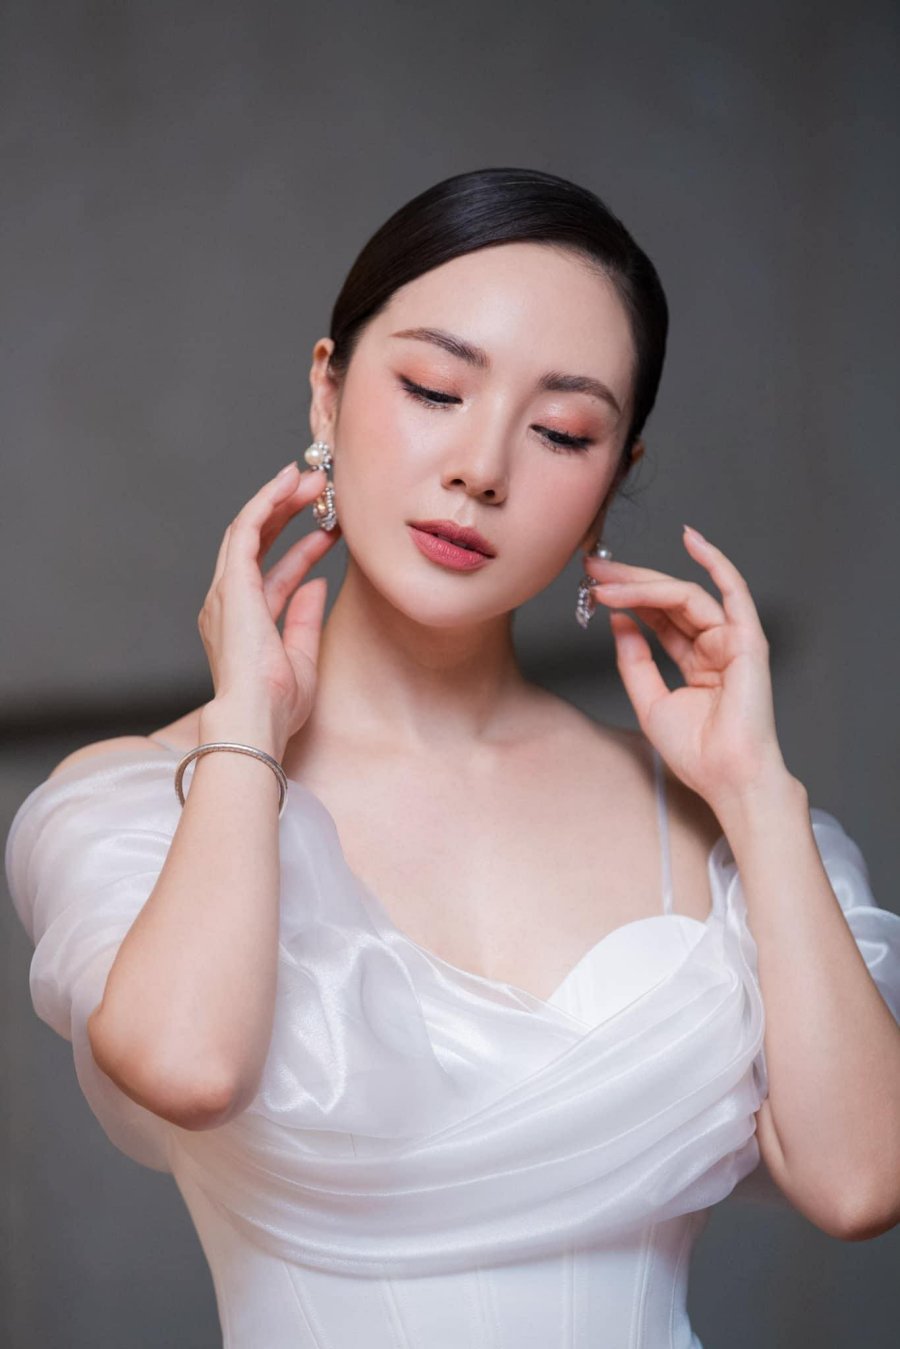 Nhan sắc xinh đẹp, ngọt ngào của Phương Linh ở độ tuổi U40 nhận được nhiều lời khen.